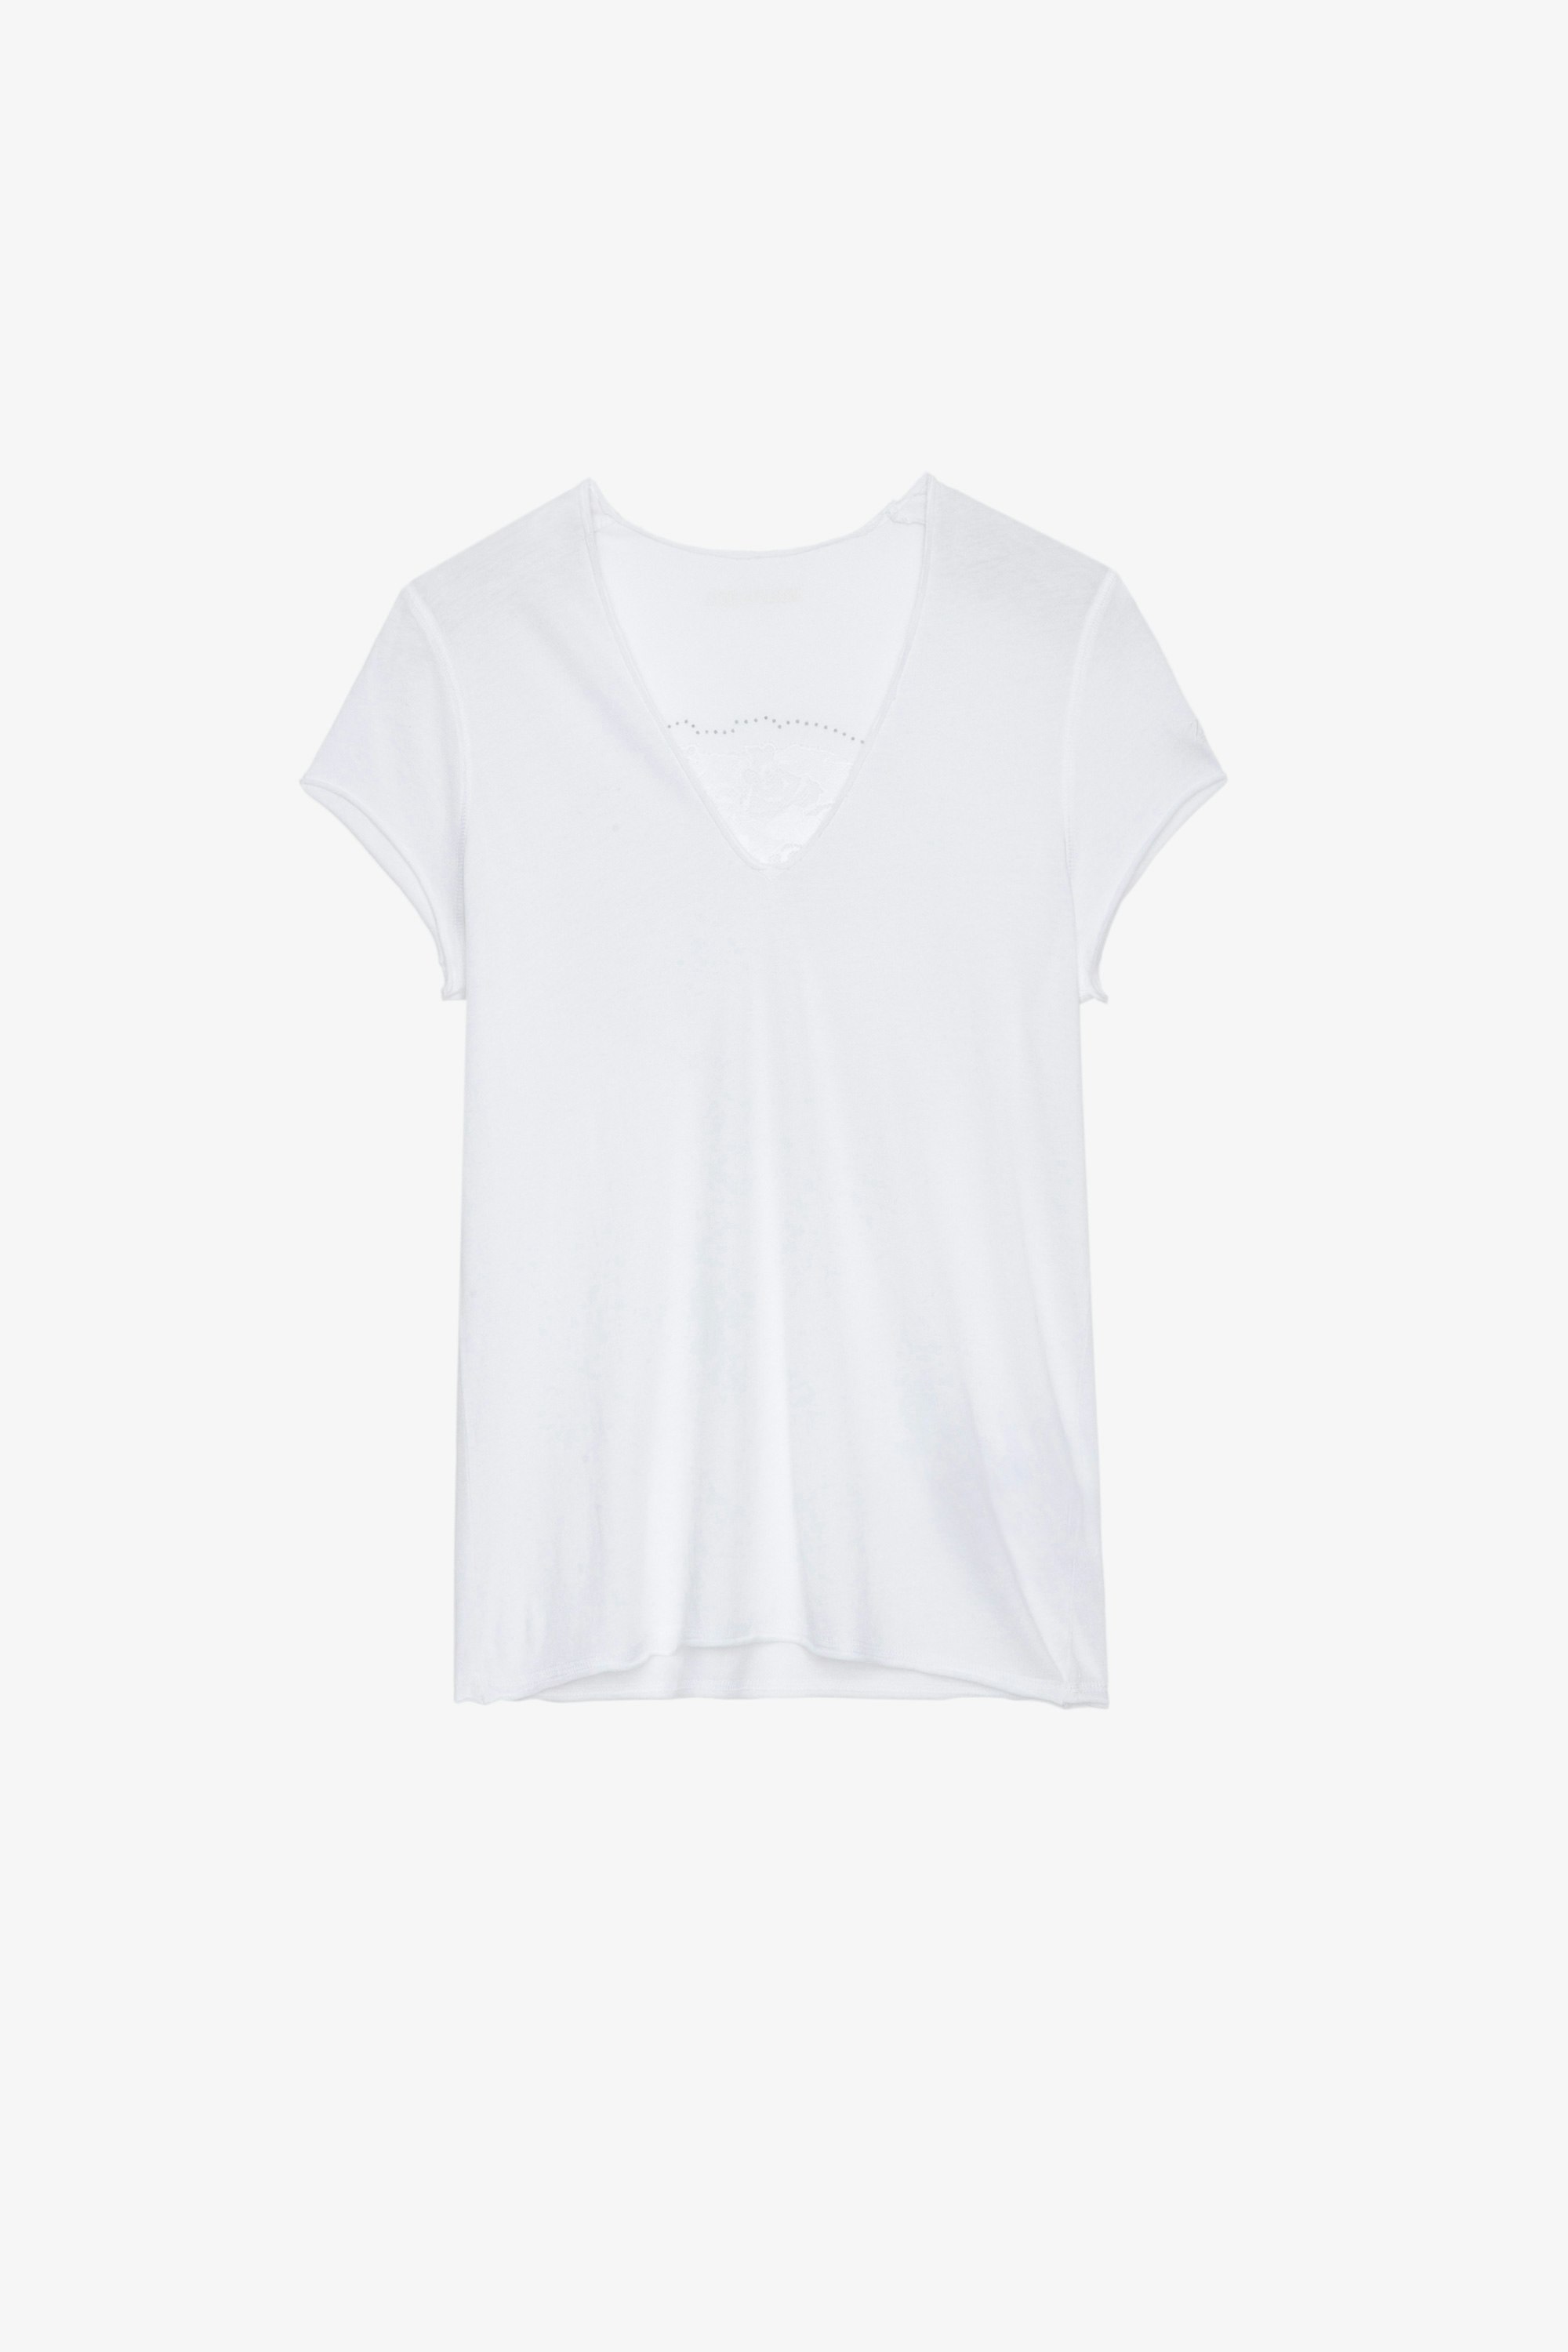 T-Shirt Story Fishnet T-shirt en coton blanc orné de motif skull fleurs et de cristaux au dos Femme